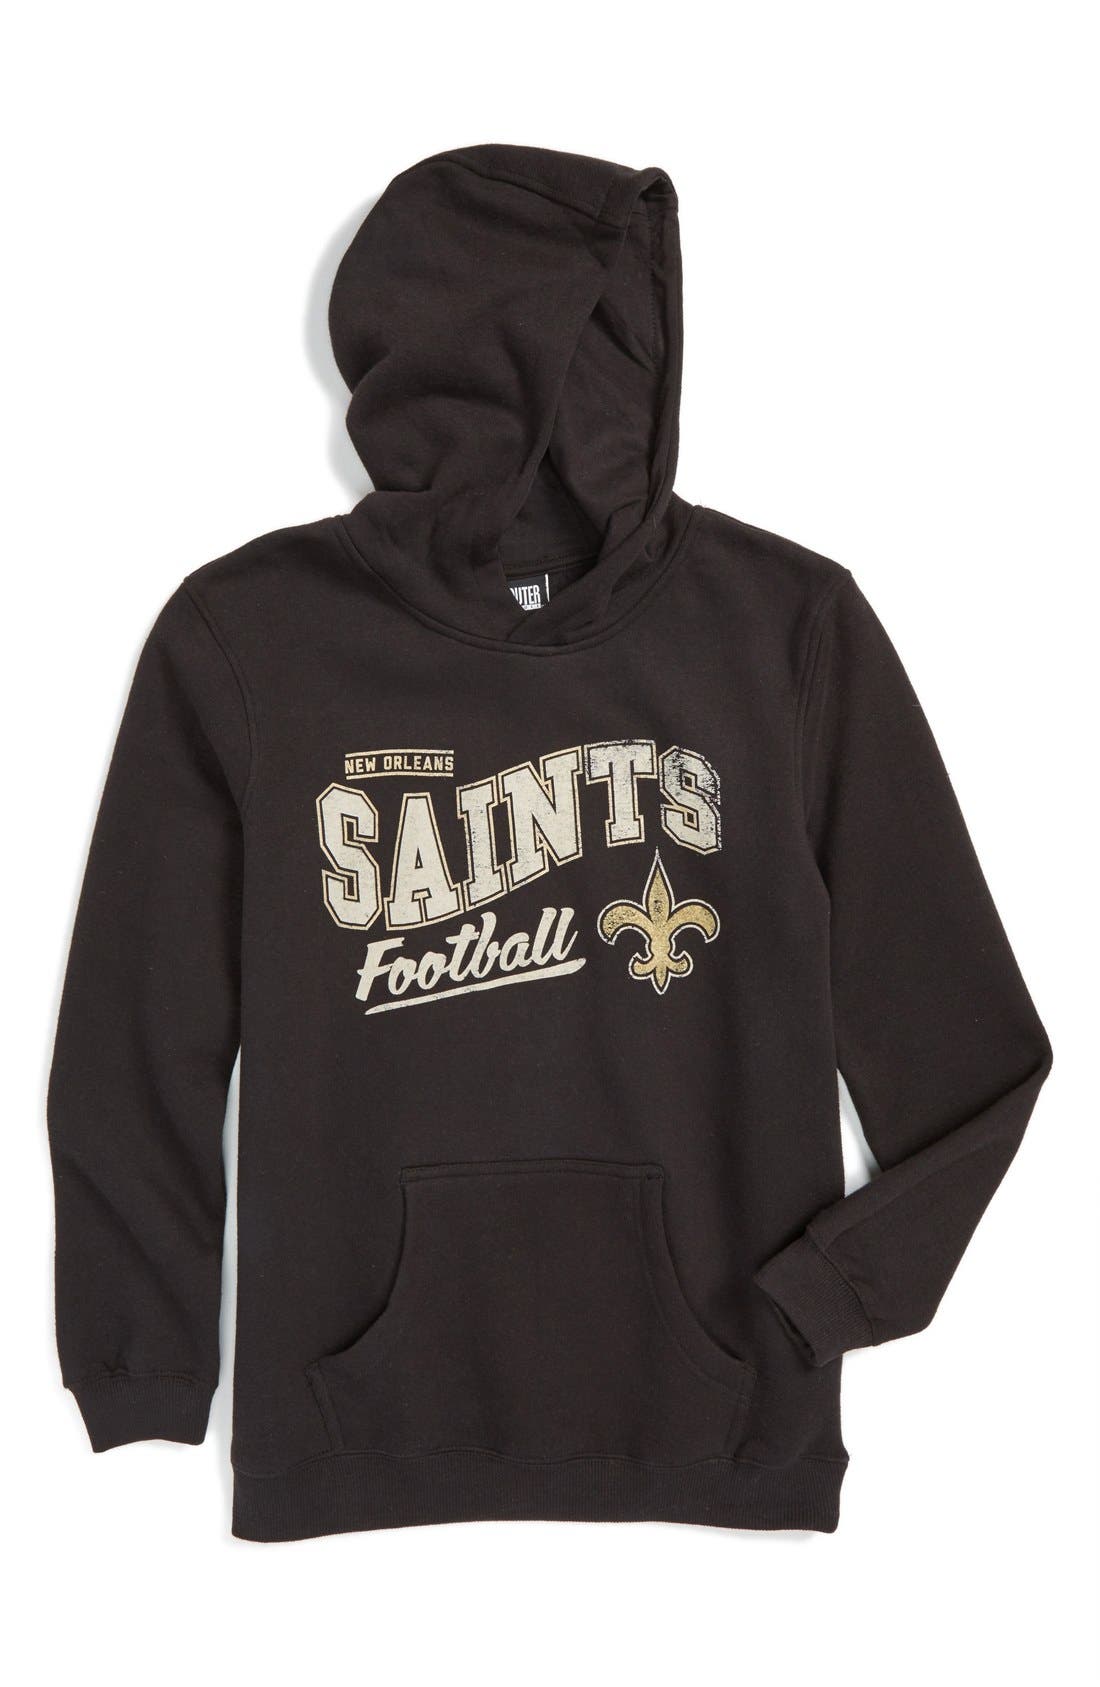 boys saints hoodie